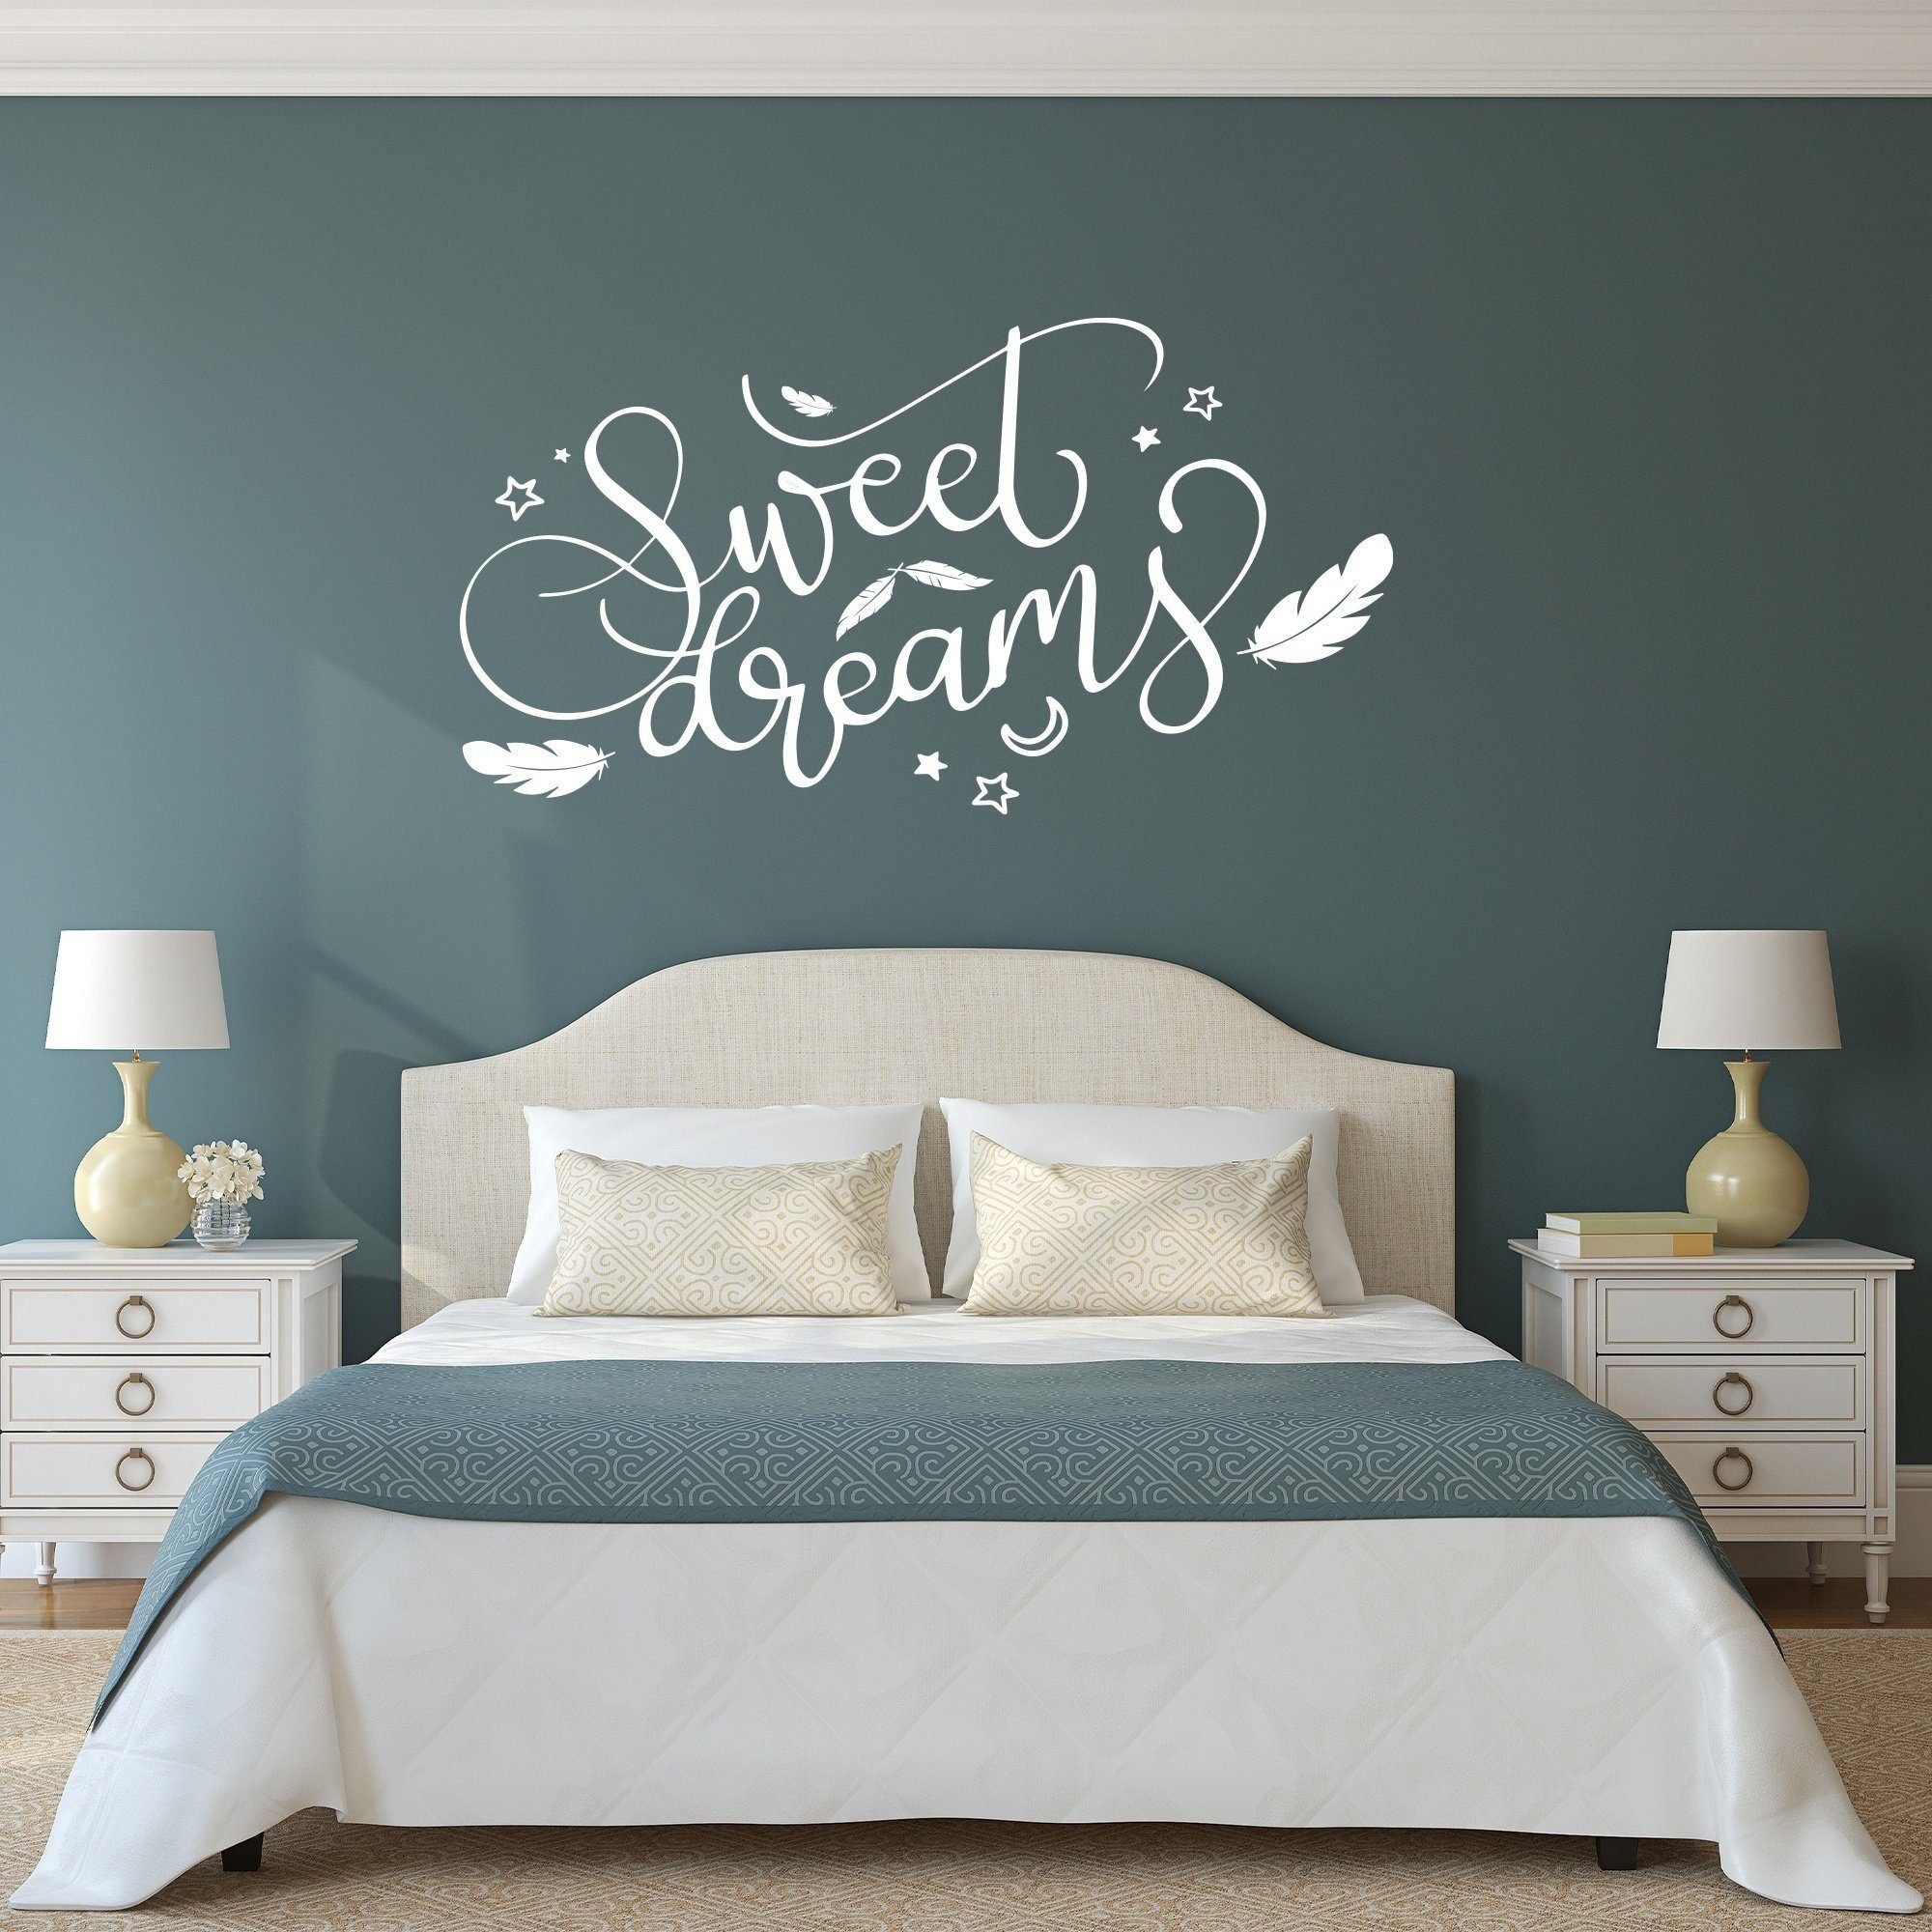 GRAVURZEILE Wandtattoo - Sweet Dreams Design - Wandtattoo für Schlafzimmer  Wohnzimmer - Größe ca. 140 x 70 cm - Selbstklebend - Konturschnitt ohne  Transparente oder weiße Ränder – Wanddeko